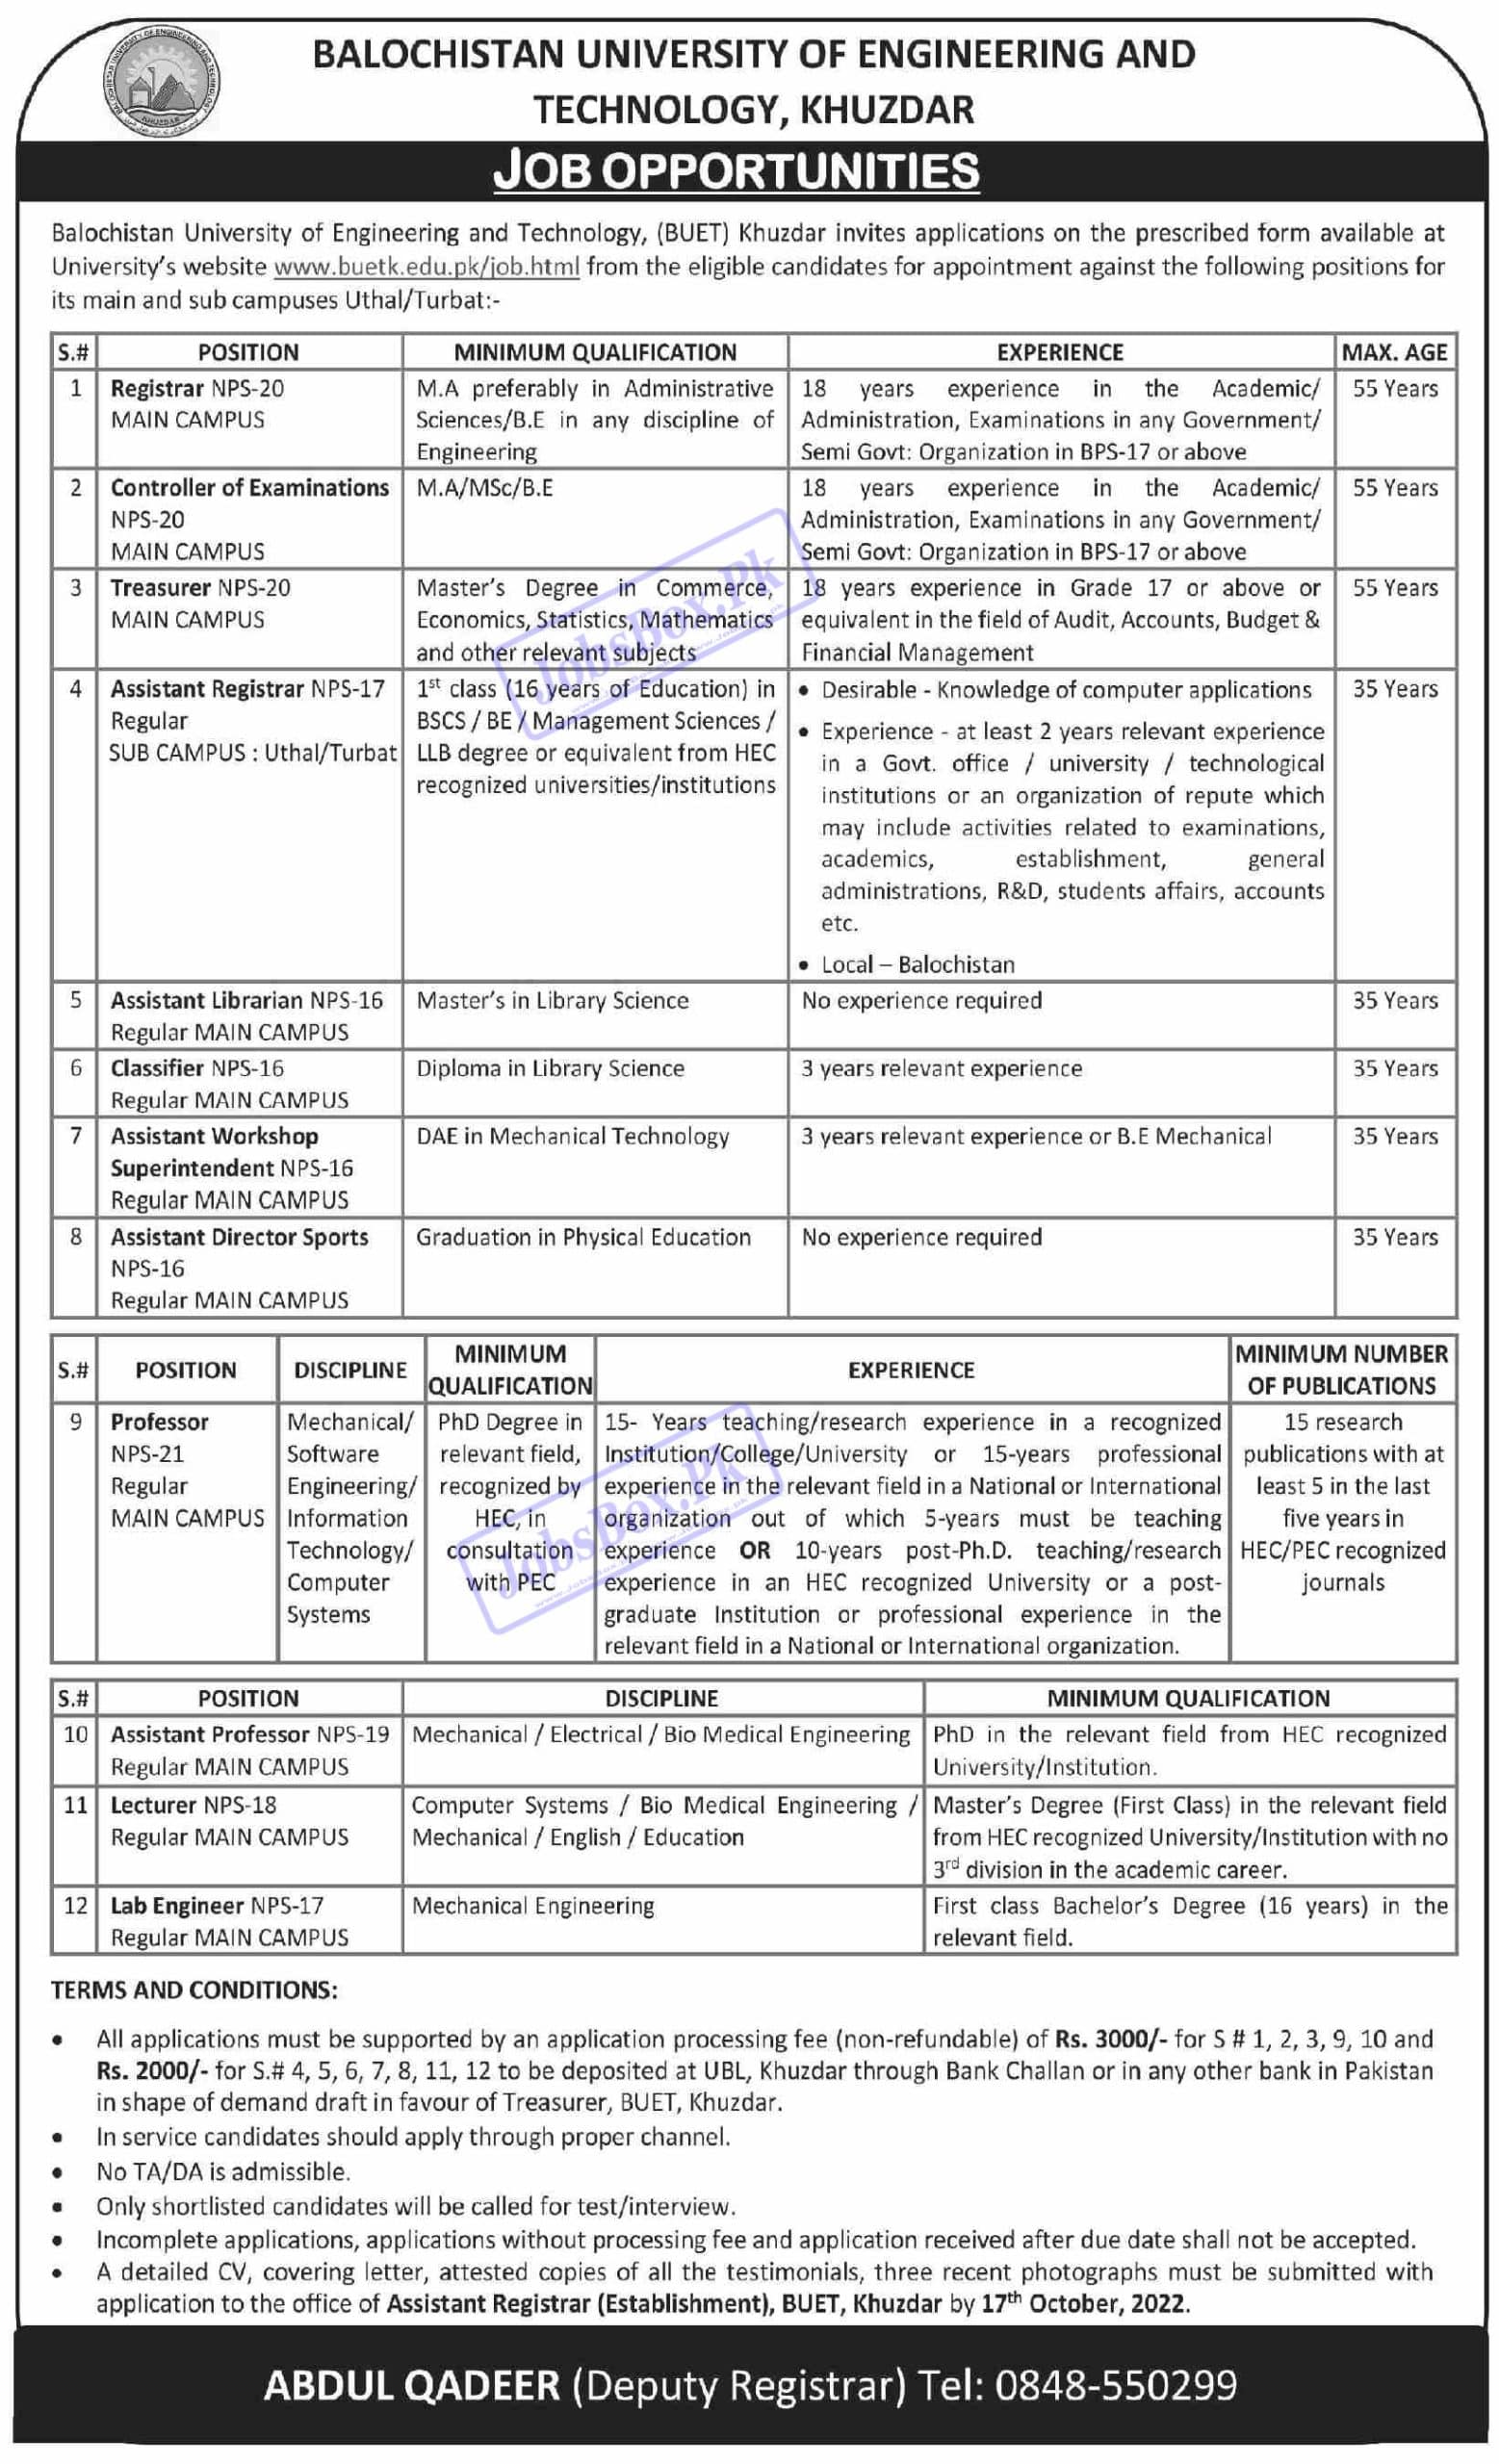 BUET Khuzdar Jobs September 2022 - Balochistan UET Khuzdar Careers